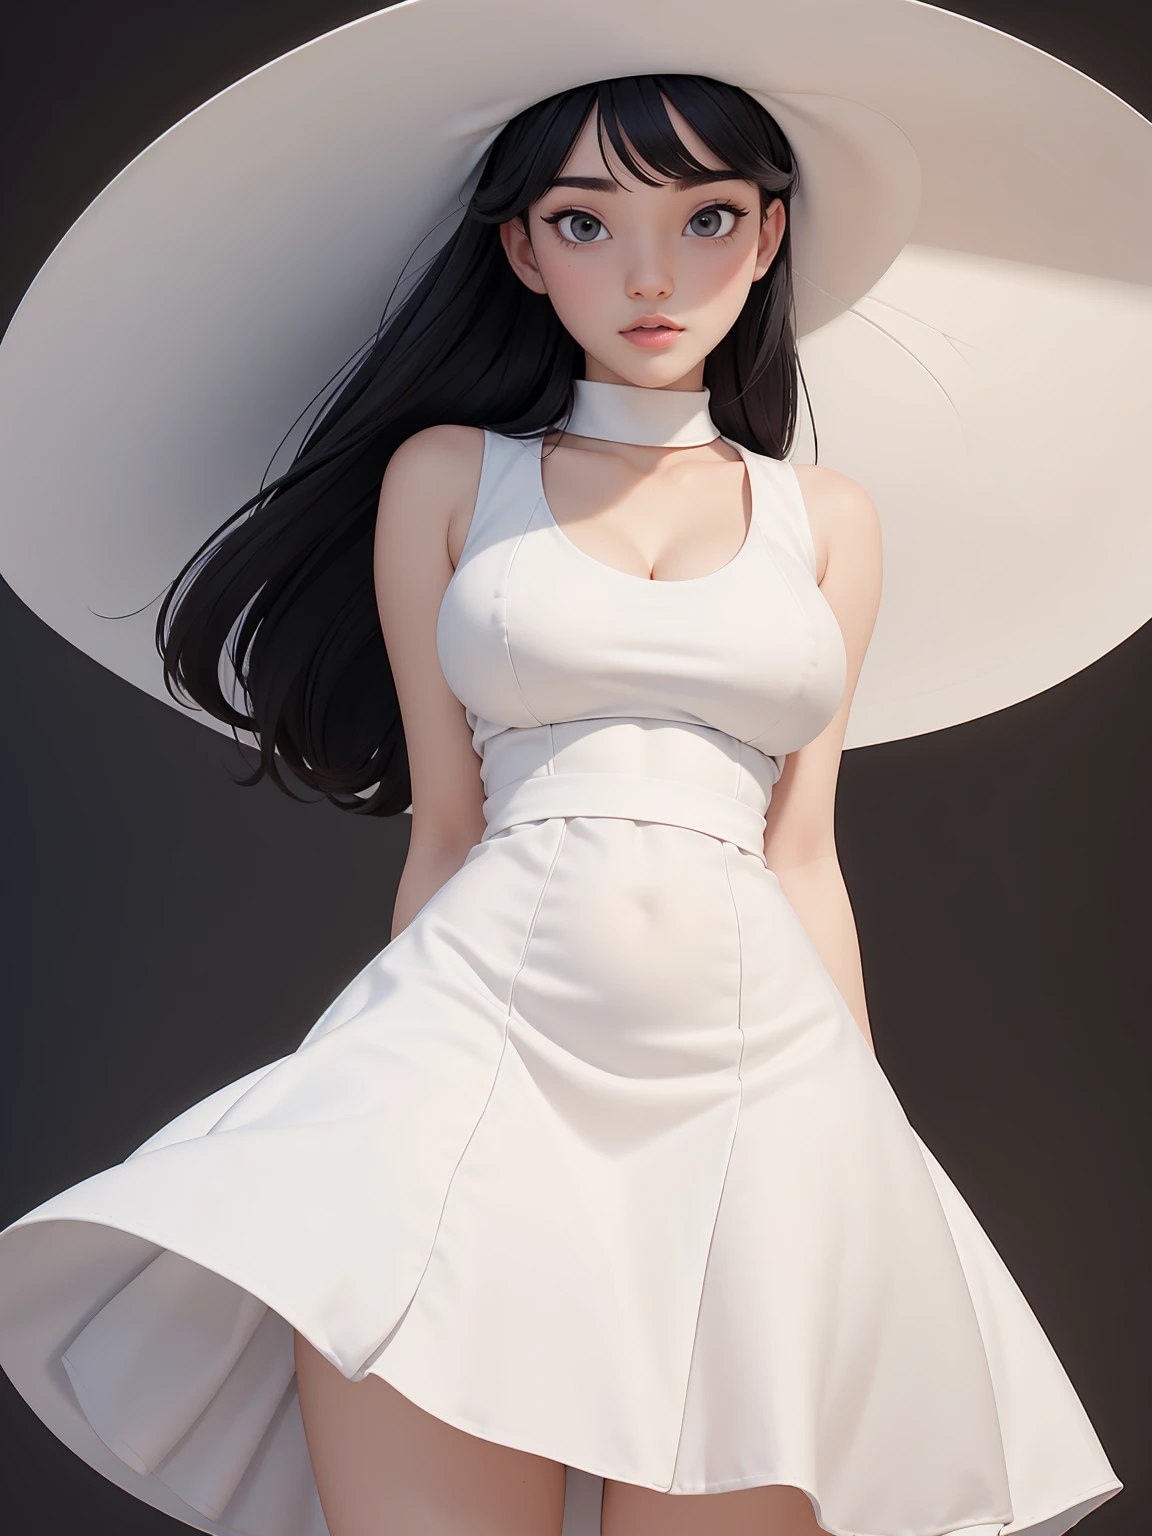 (أفضل جودة, تحفة, وجه مثالي) شعر أسود, 18 سنة فتاة شاحبة, تمثال نصفي كبير, فستان الشمس الأبيض, قبعة بيضاء كبيرة
